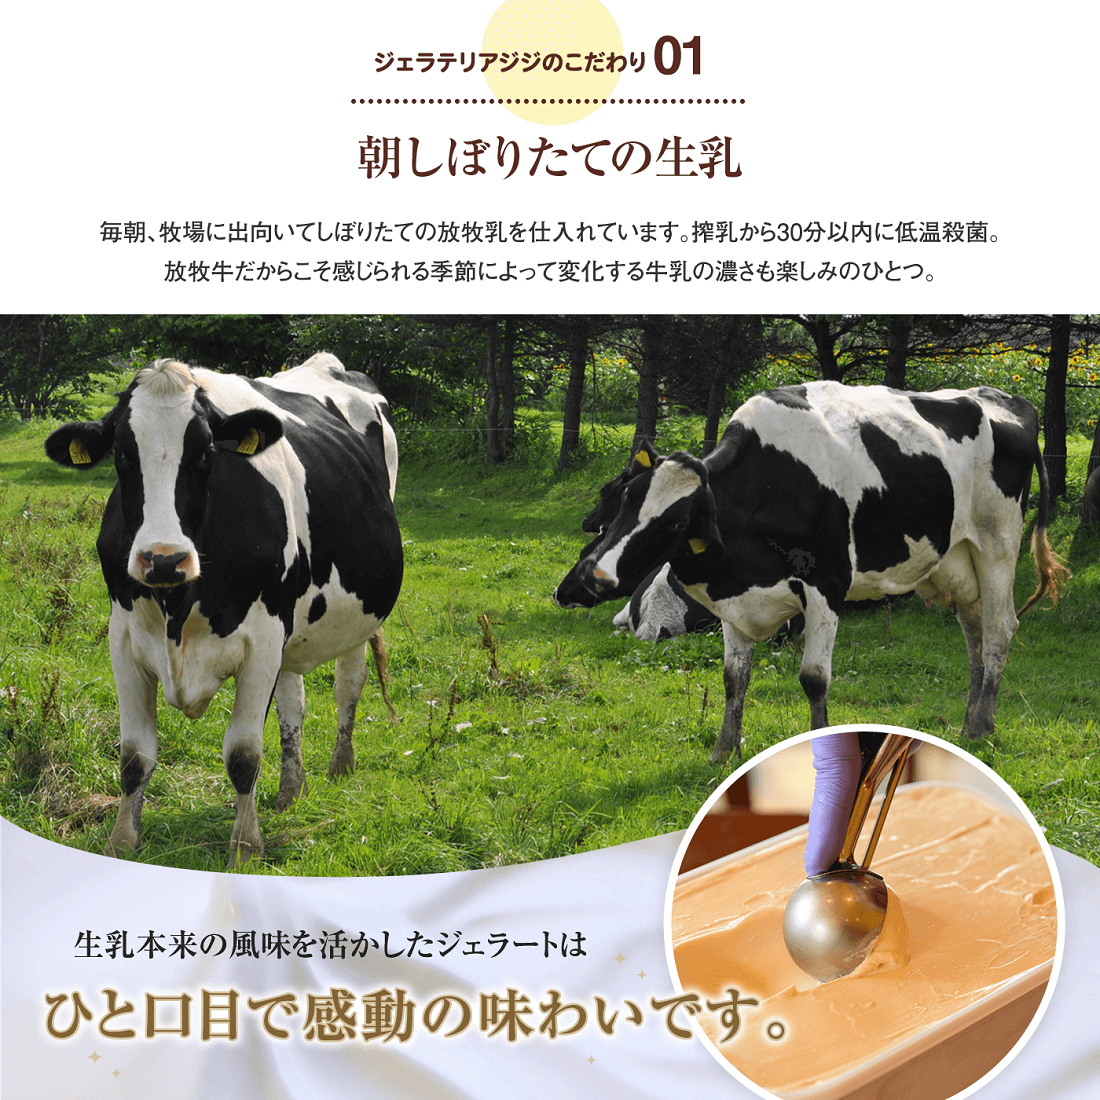 【業務用サイズ】水本牧場の放牧牛の生乳を使用したGigiのイタリア産ピスタチオ2000mlサイズ【43020】